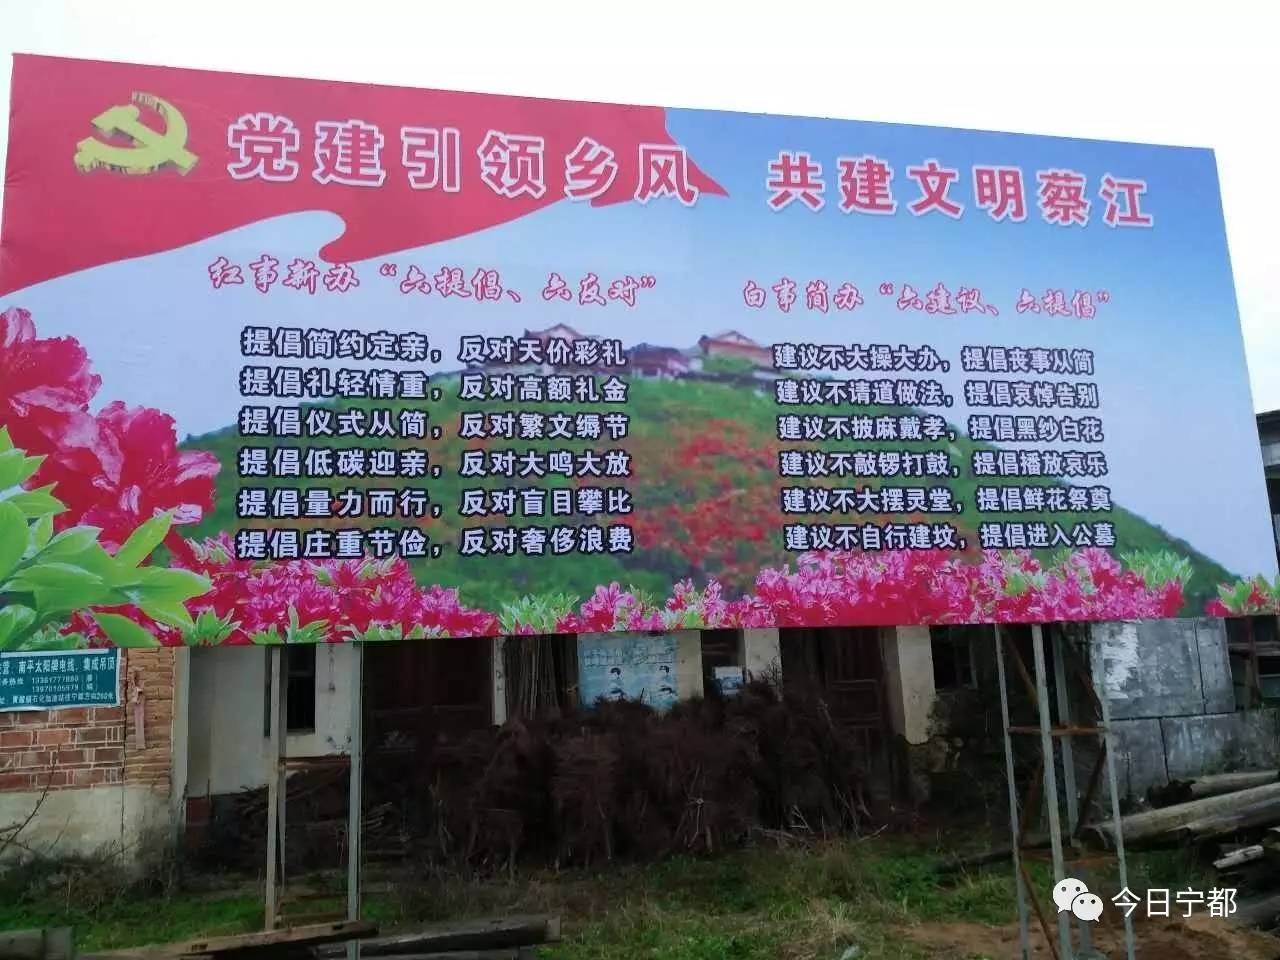 蔡江乡的文明新风行动宣传牌县公安局加大对麻将赌博巡查力度在全县